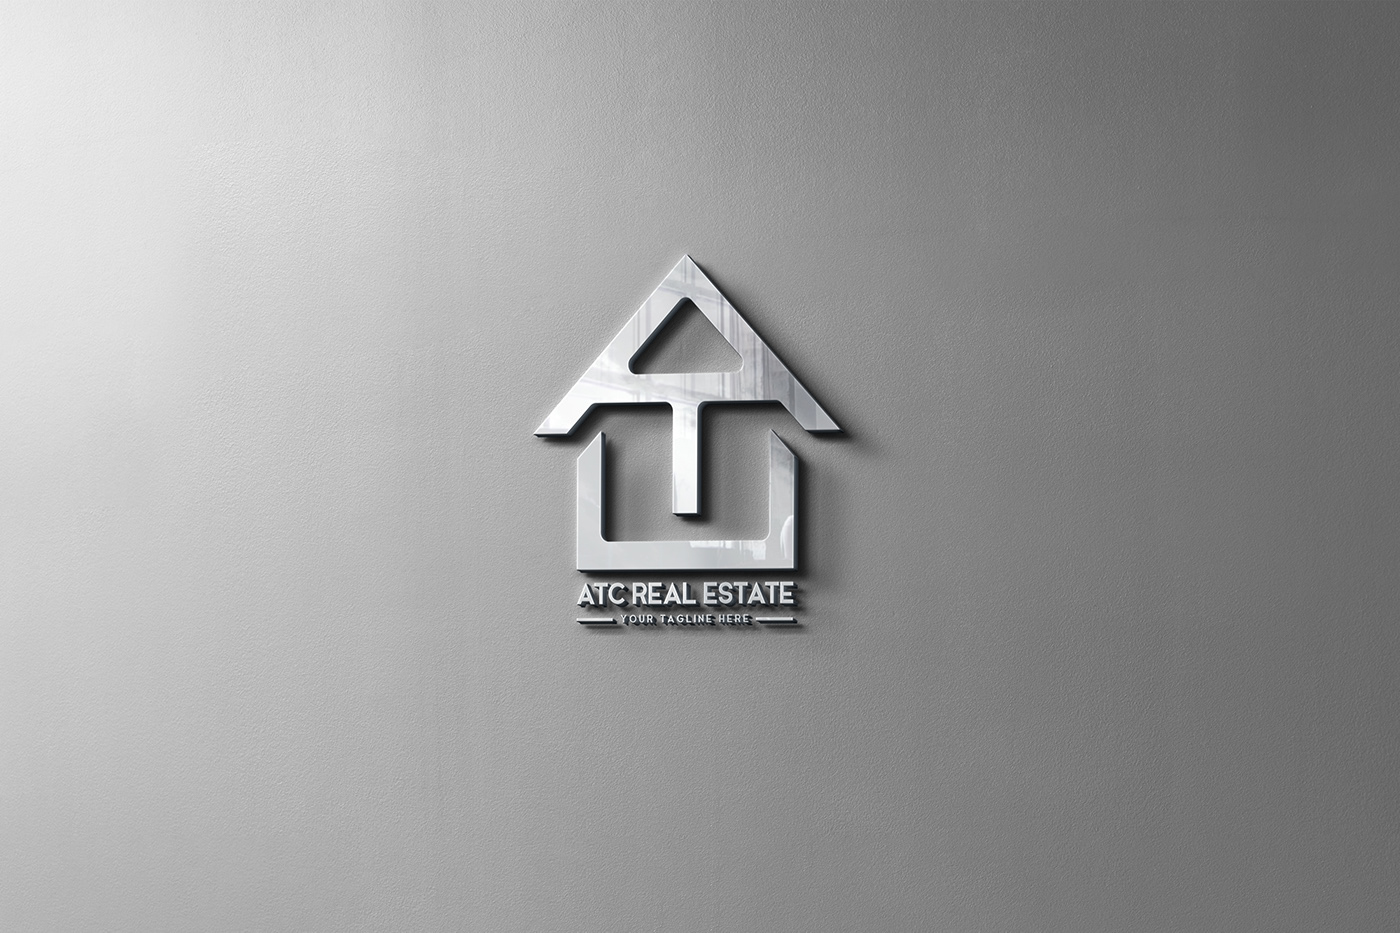 Logo Design Logotype logo maker brand identity real estate visual identity Real estate logo Typography logo design logos Brand Design